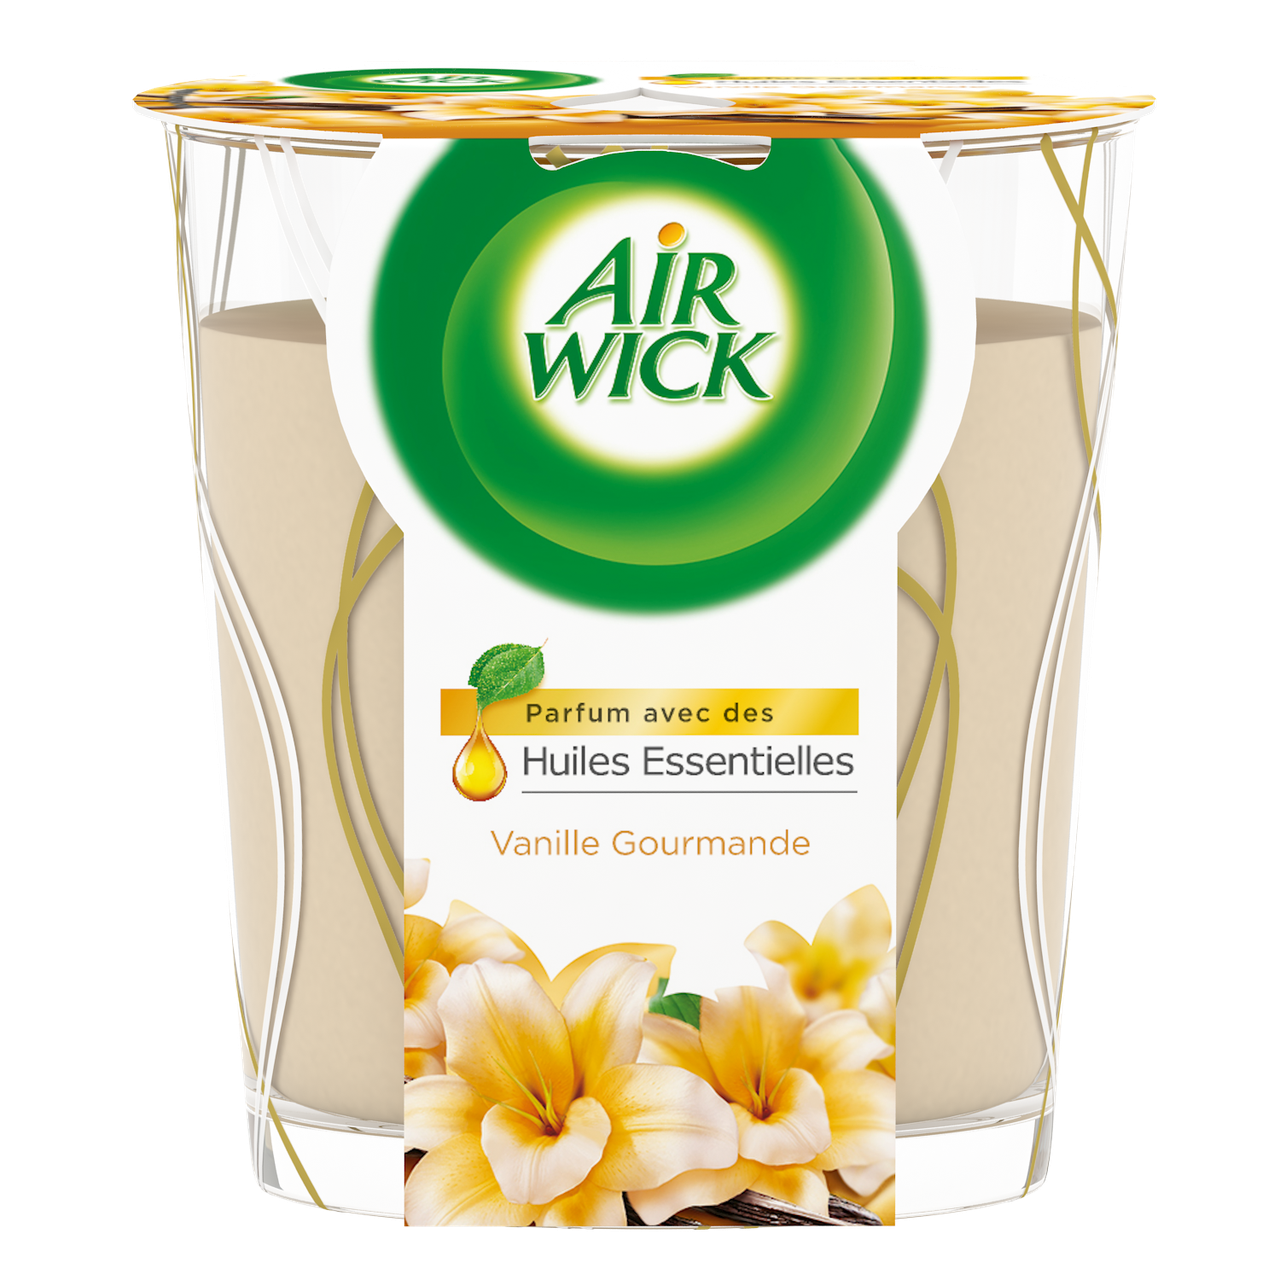 Bâtonnets et bougie parfumés by Air Wick - Organiser son quotidien